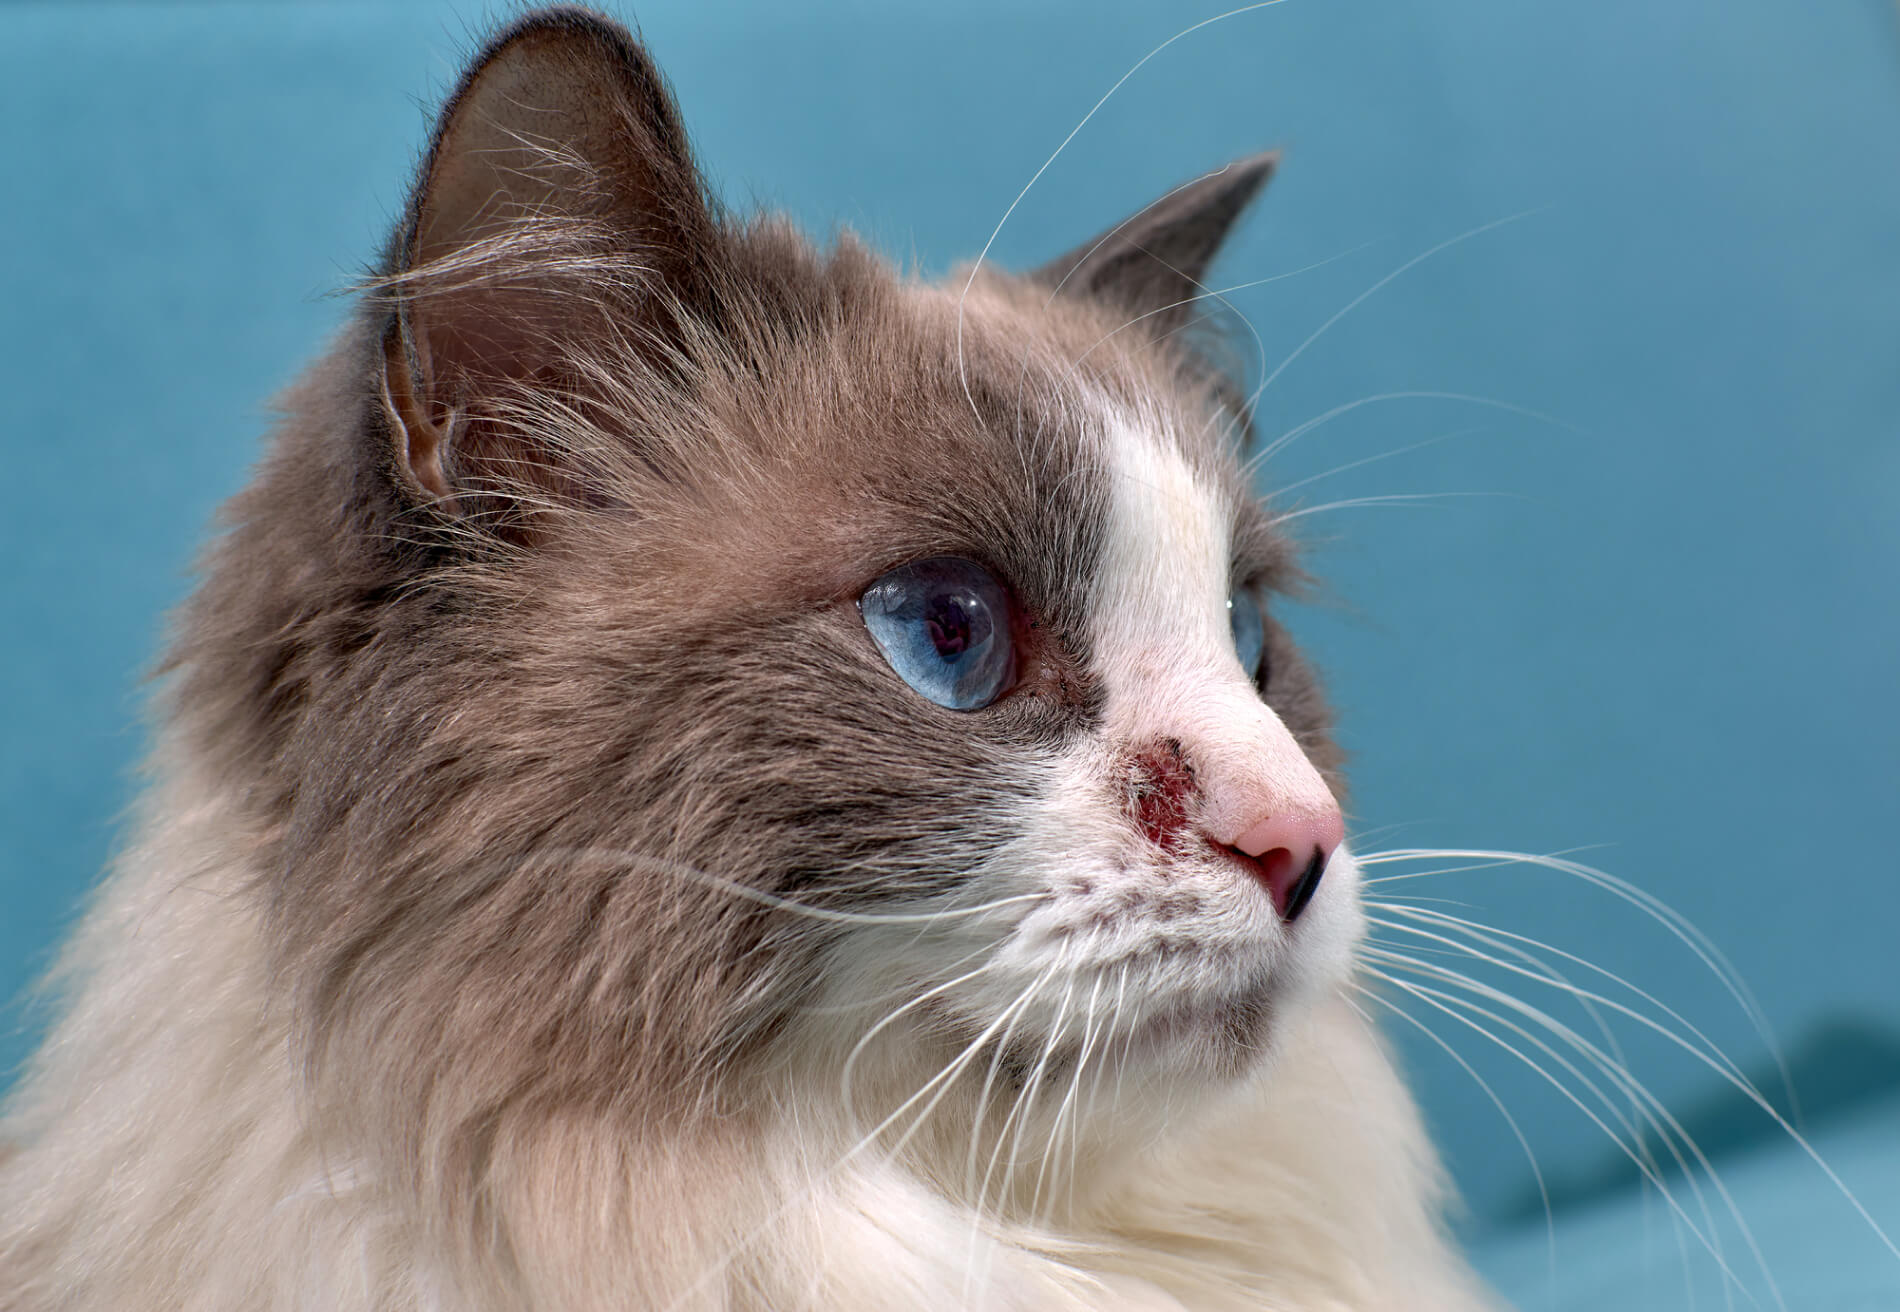 Maladies de la peau chez les chats : Causes, symptômes et traitements possibles